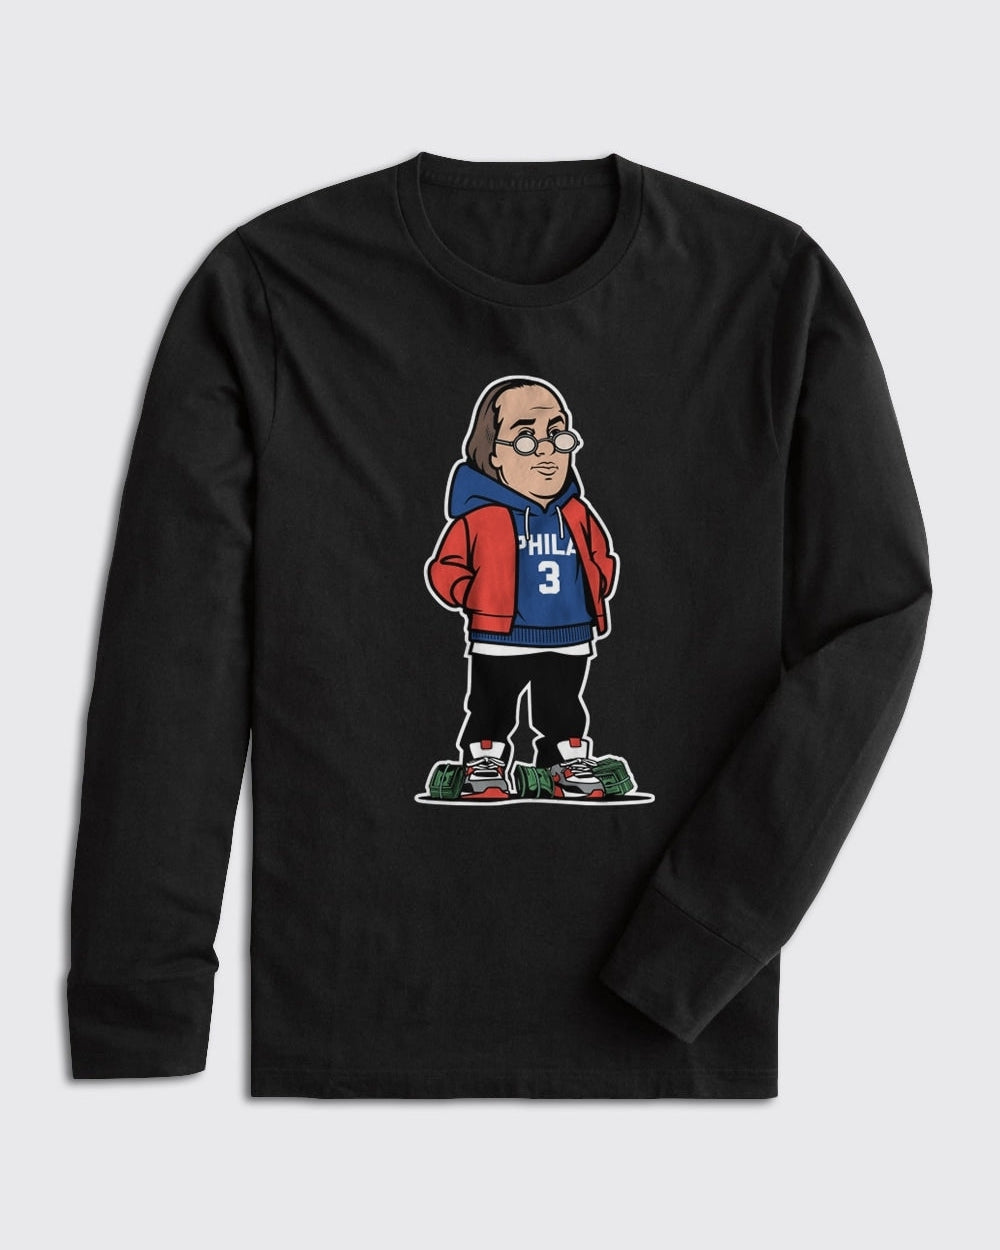 Philadelphia 76ers Sports Fan Sweatshirts for sale